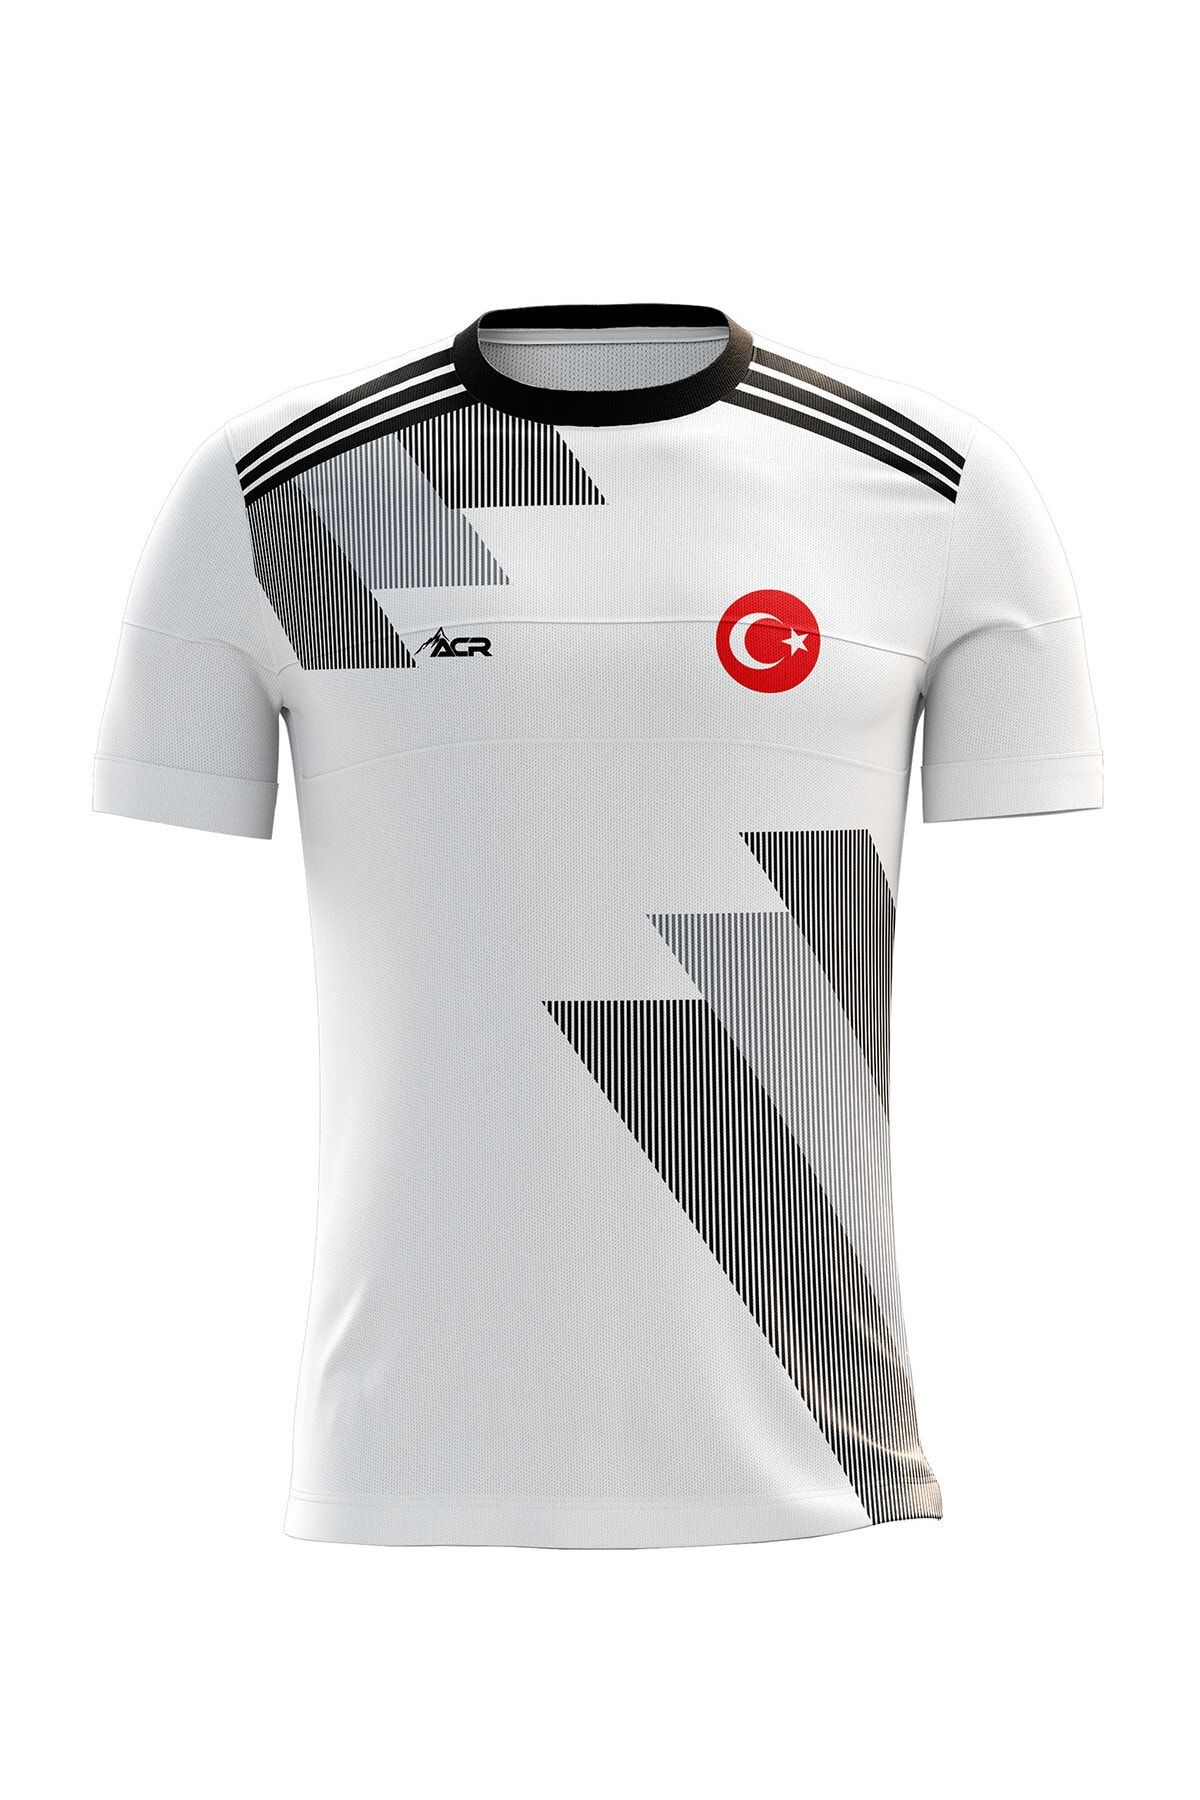 ACR Giyim Tekstil Forma Baskı Kişiye Özel Futbol Forması Tek Üst Siyah Beyaz 19 Modeli